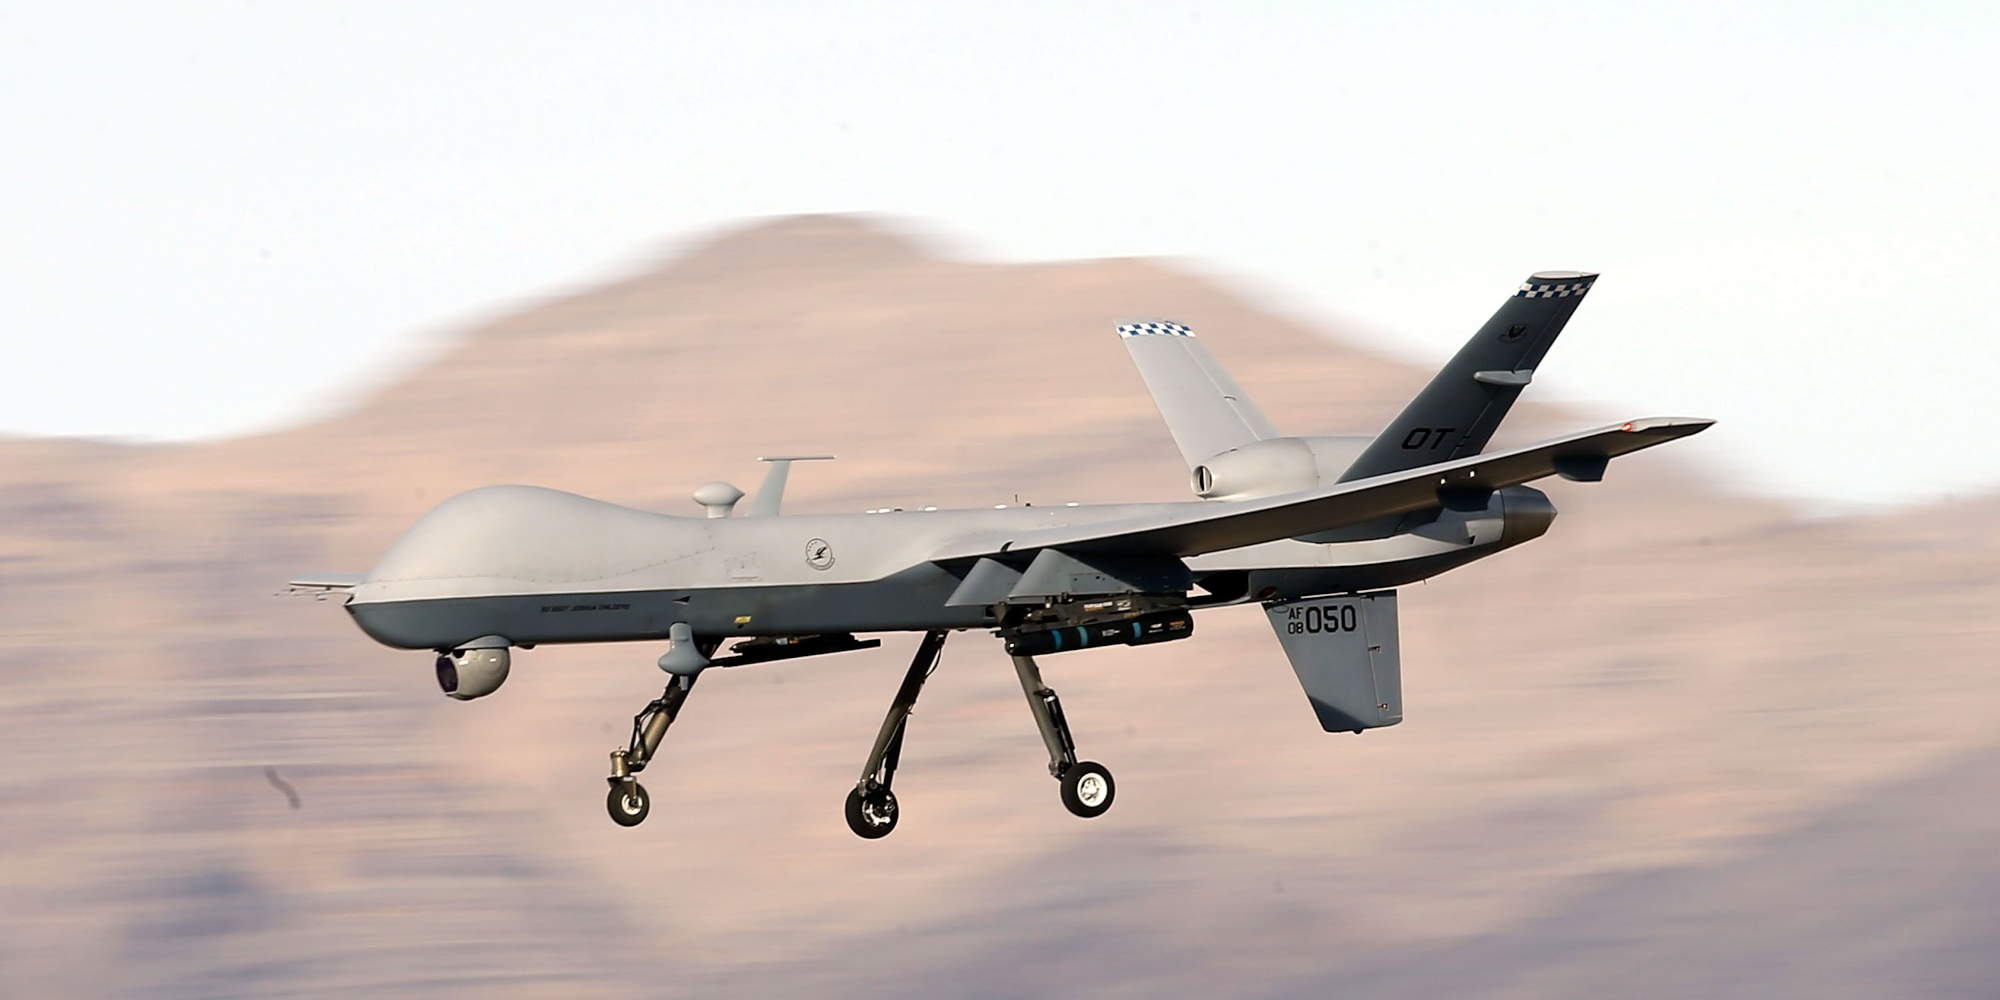 Ένα αμερικανικό Drone, Reaper, παρόμοιο με εκείνο που κατερρίφθη στη Μαύρη Θάλασσα